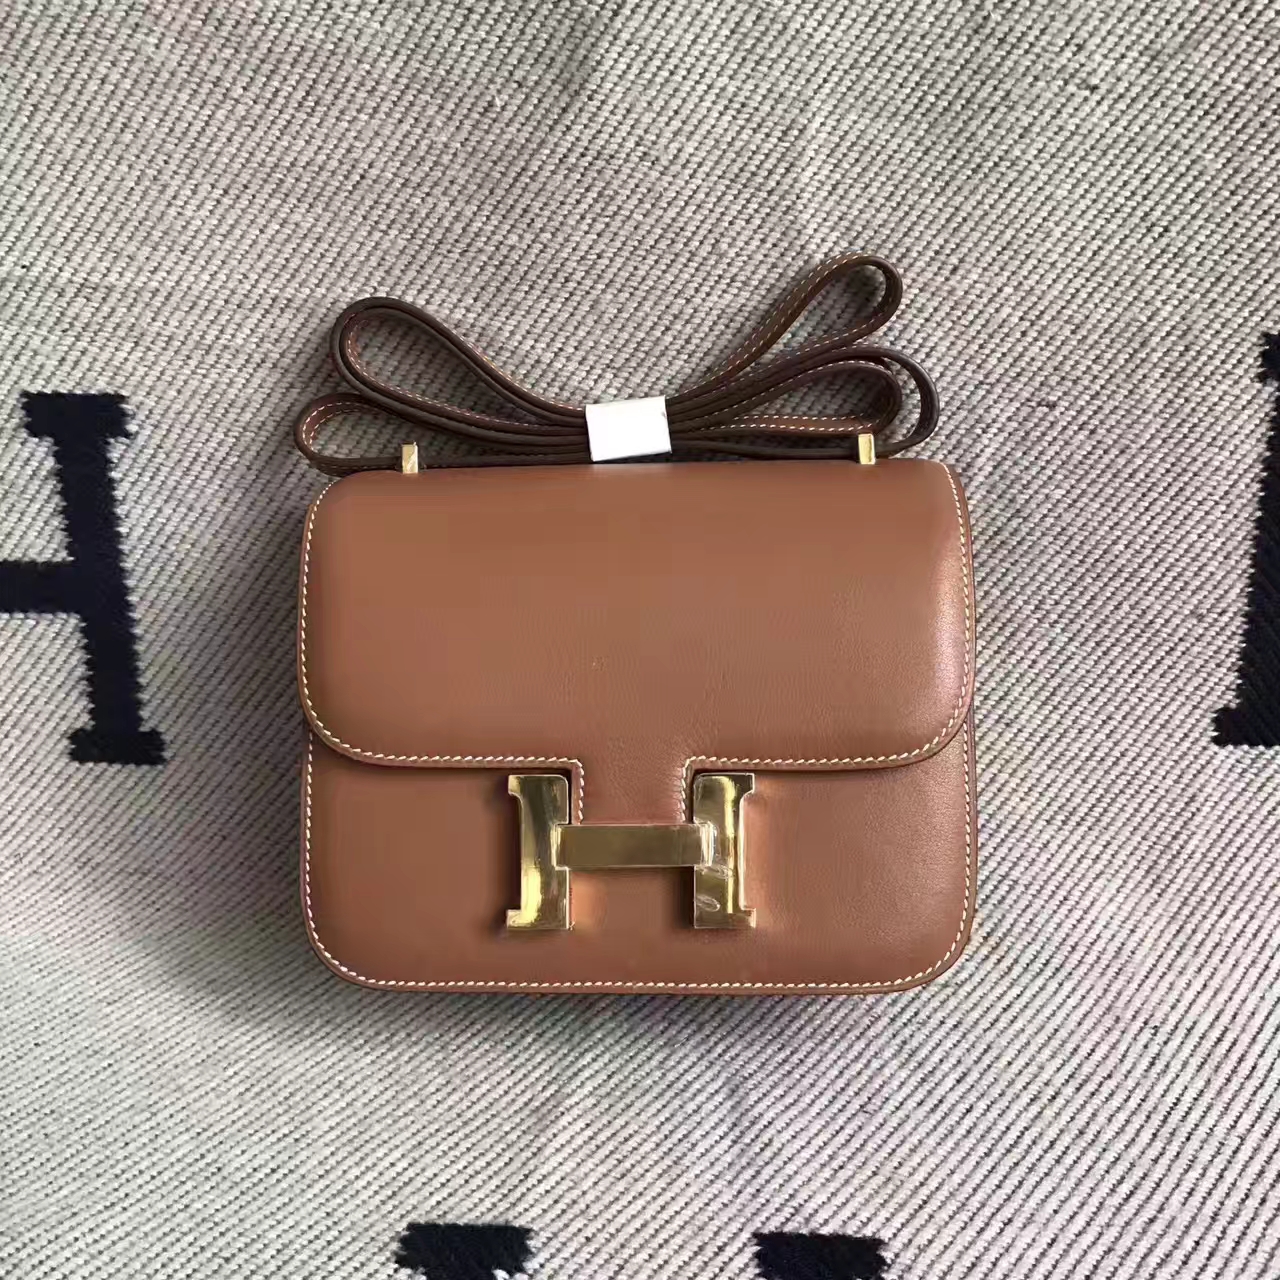 Luxury Hermes CK37 Gold Swift Leather Constance Bag Women&#8217;s Shoulder Bag19cm